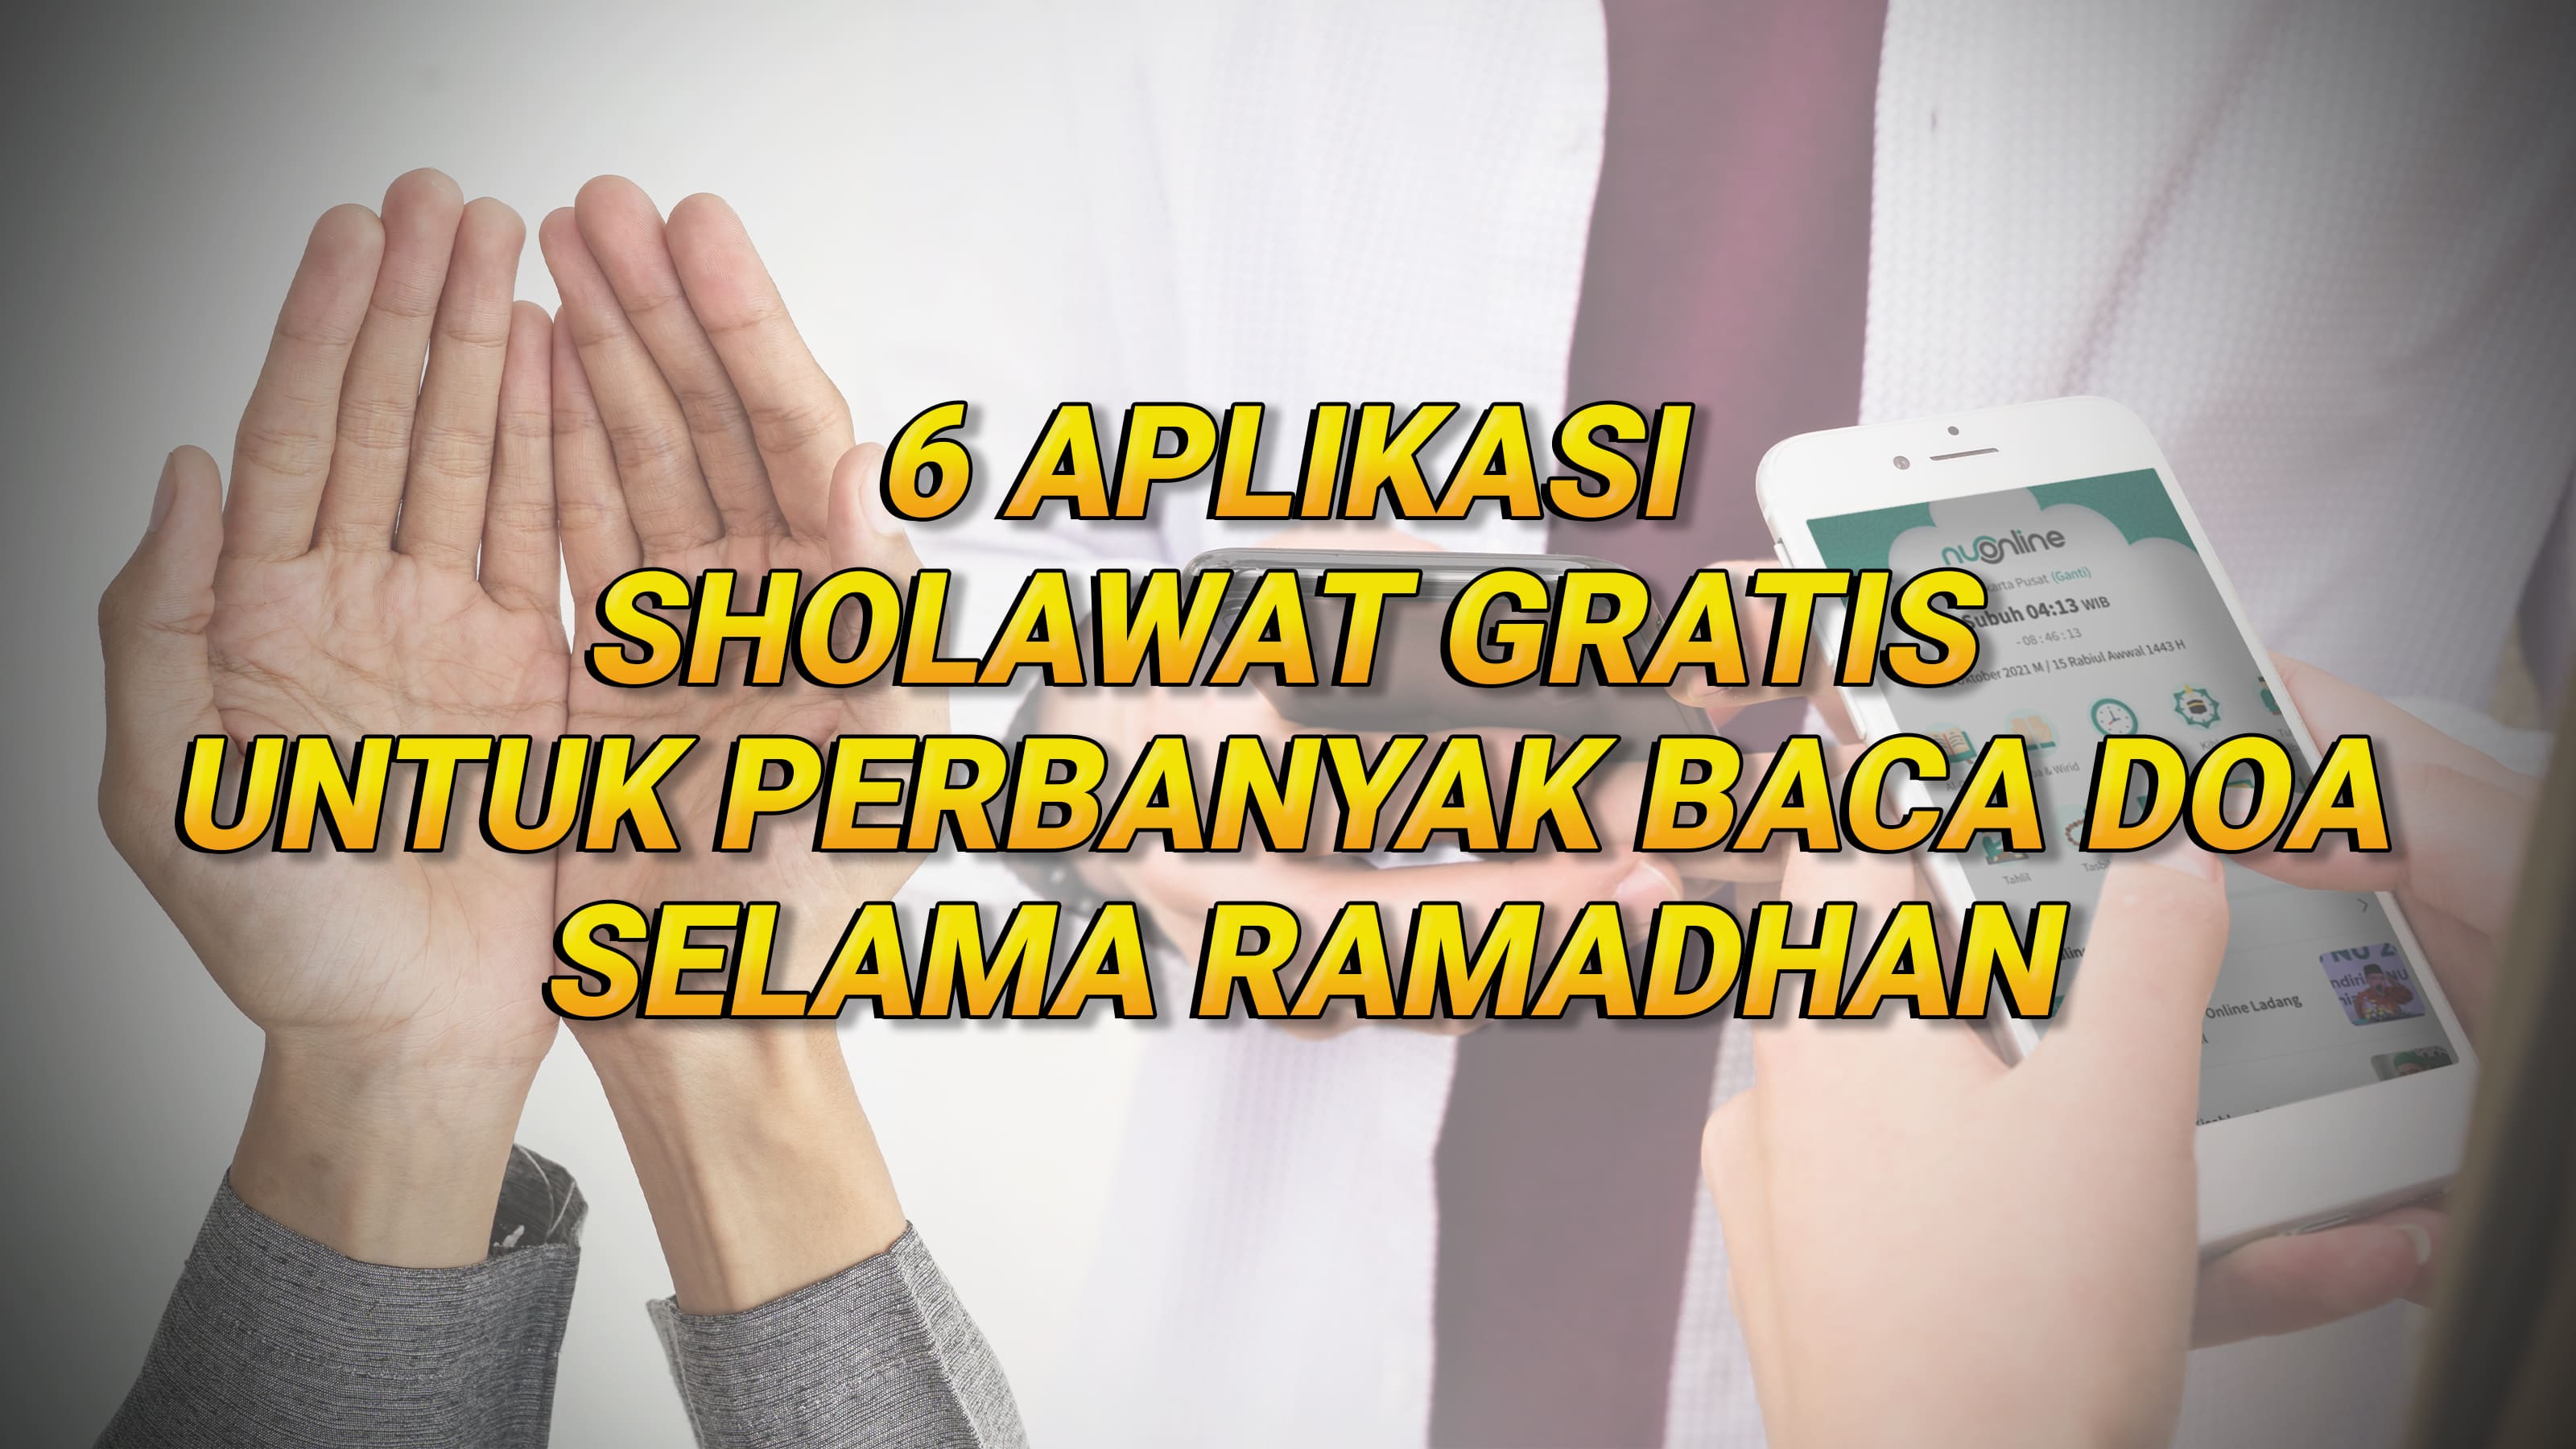 6 Aplikasi Sholawat buat Perbanyak Baca Doa Selama Ramadhan